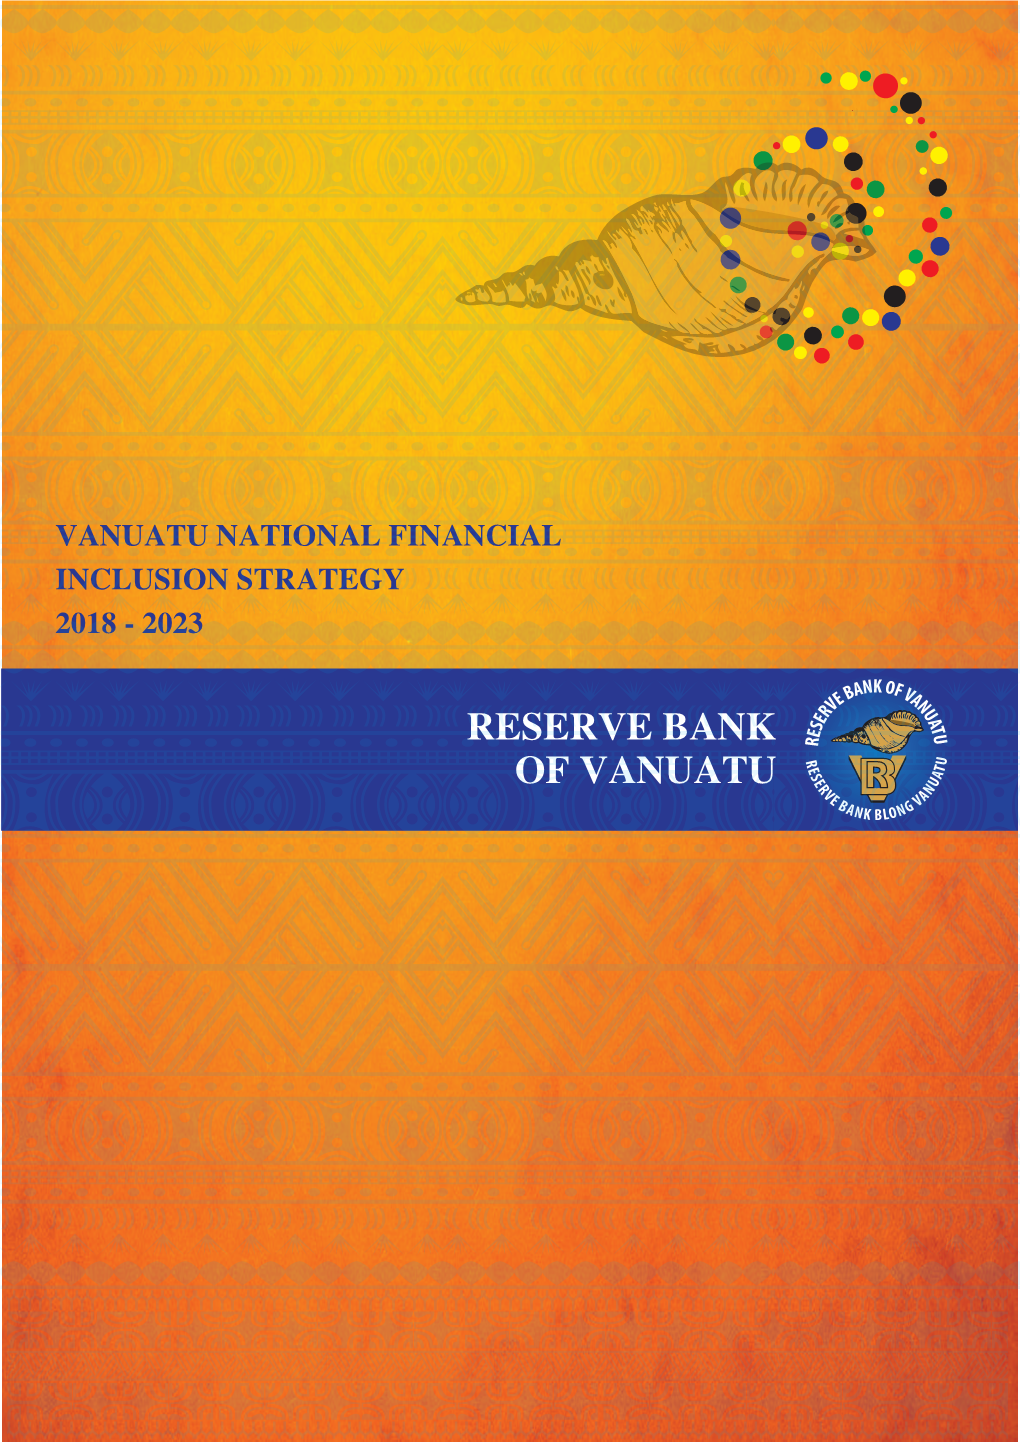 Reserve Bank of Vanuatu 4